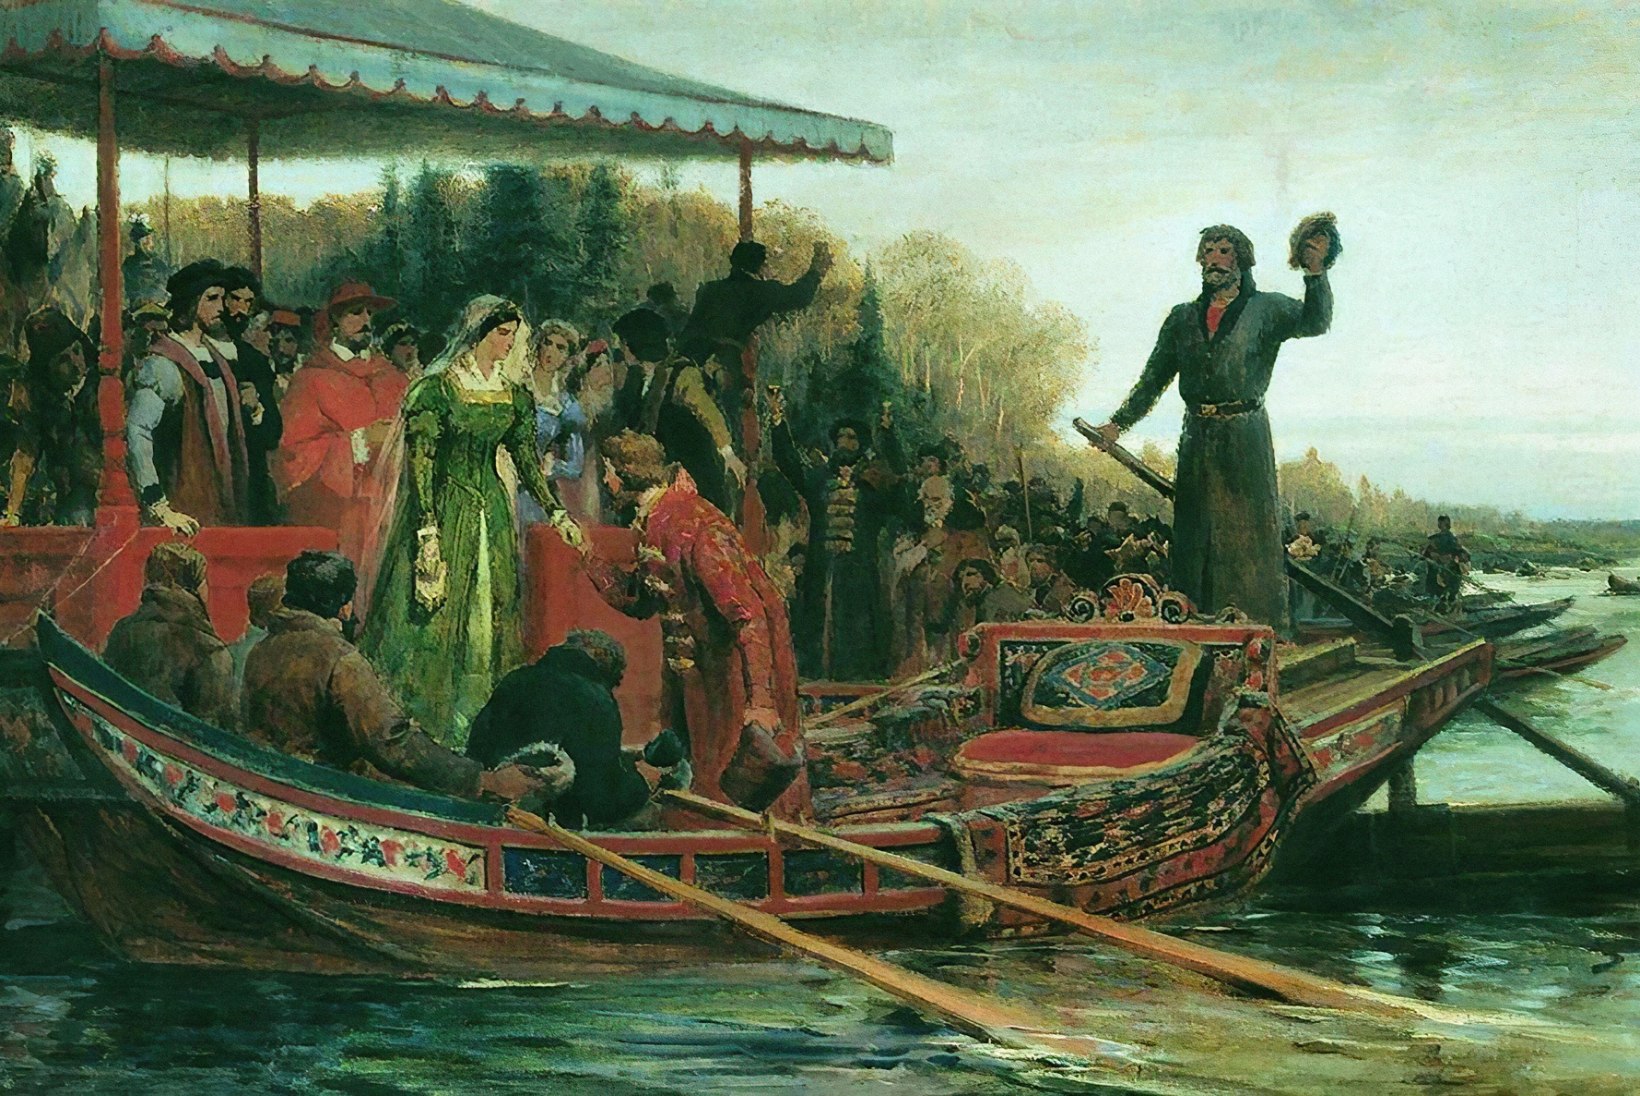 Bütsantsi viimane printsess reisis läbi Eesti, et minna Moskva suurvürstile mehele